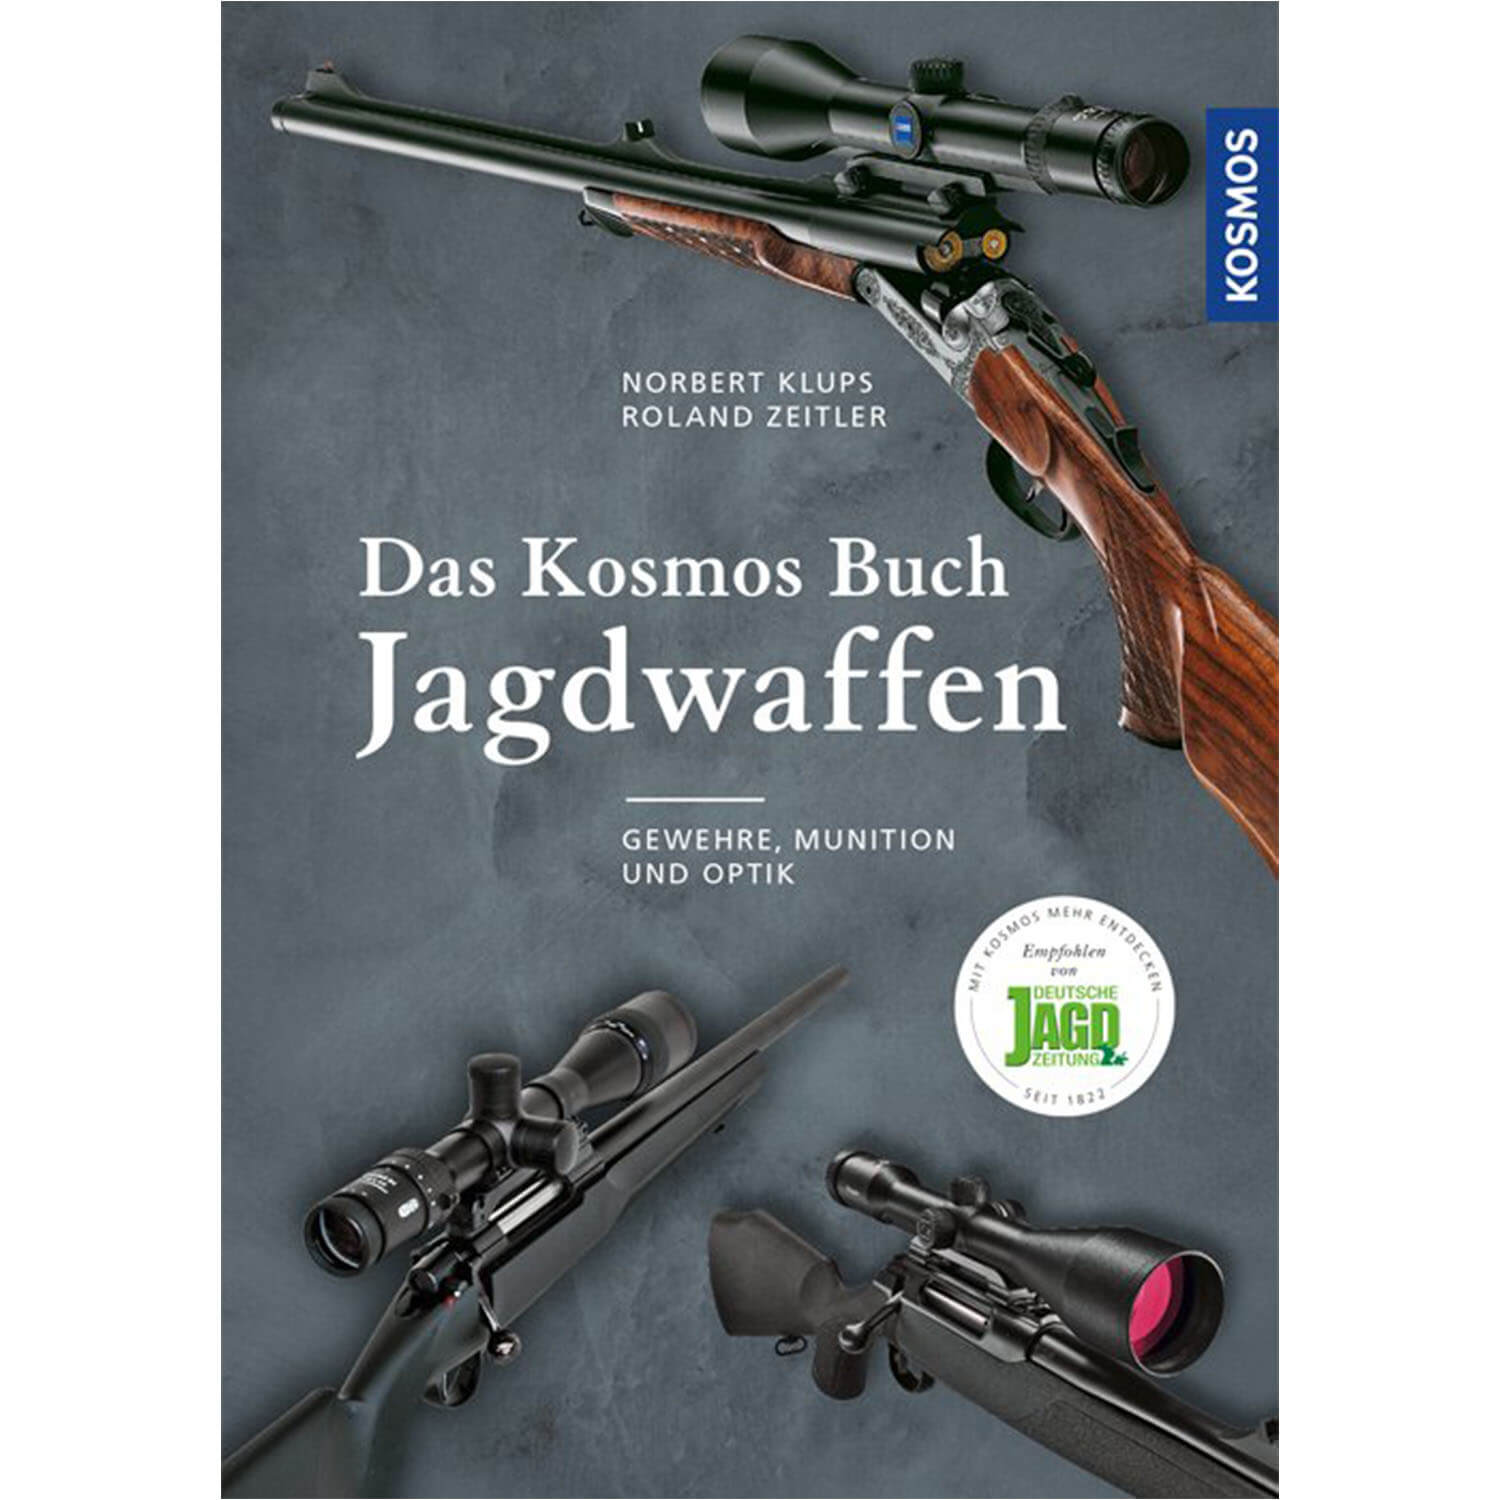 Das Kosmos Buch Jagdwaffen - Buch - Klups & Zeitler